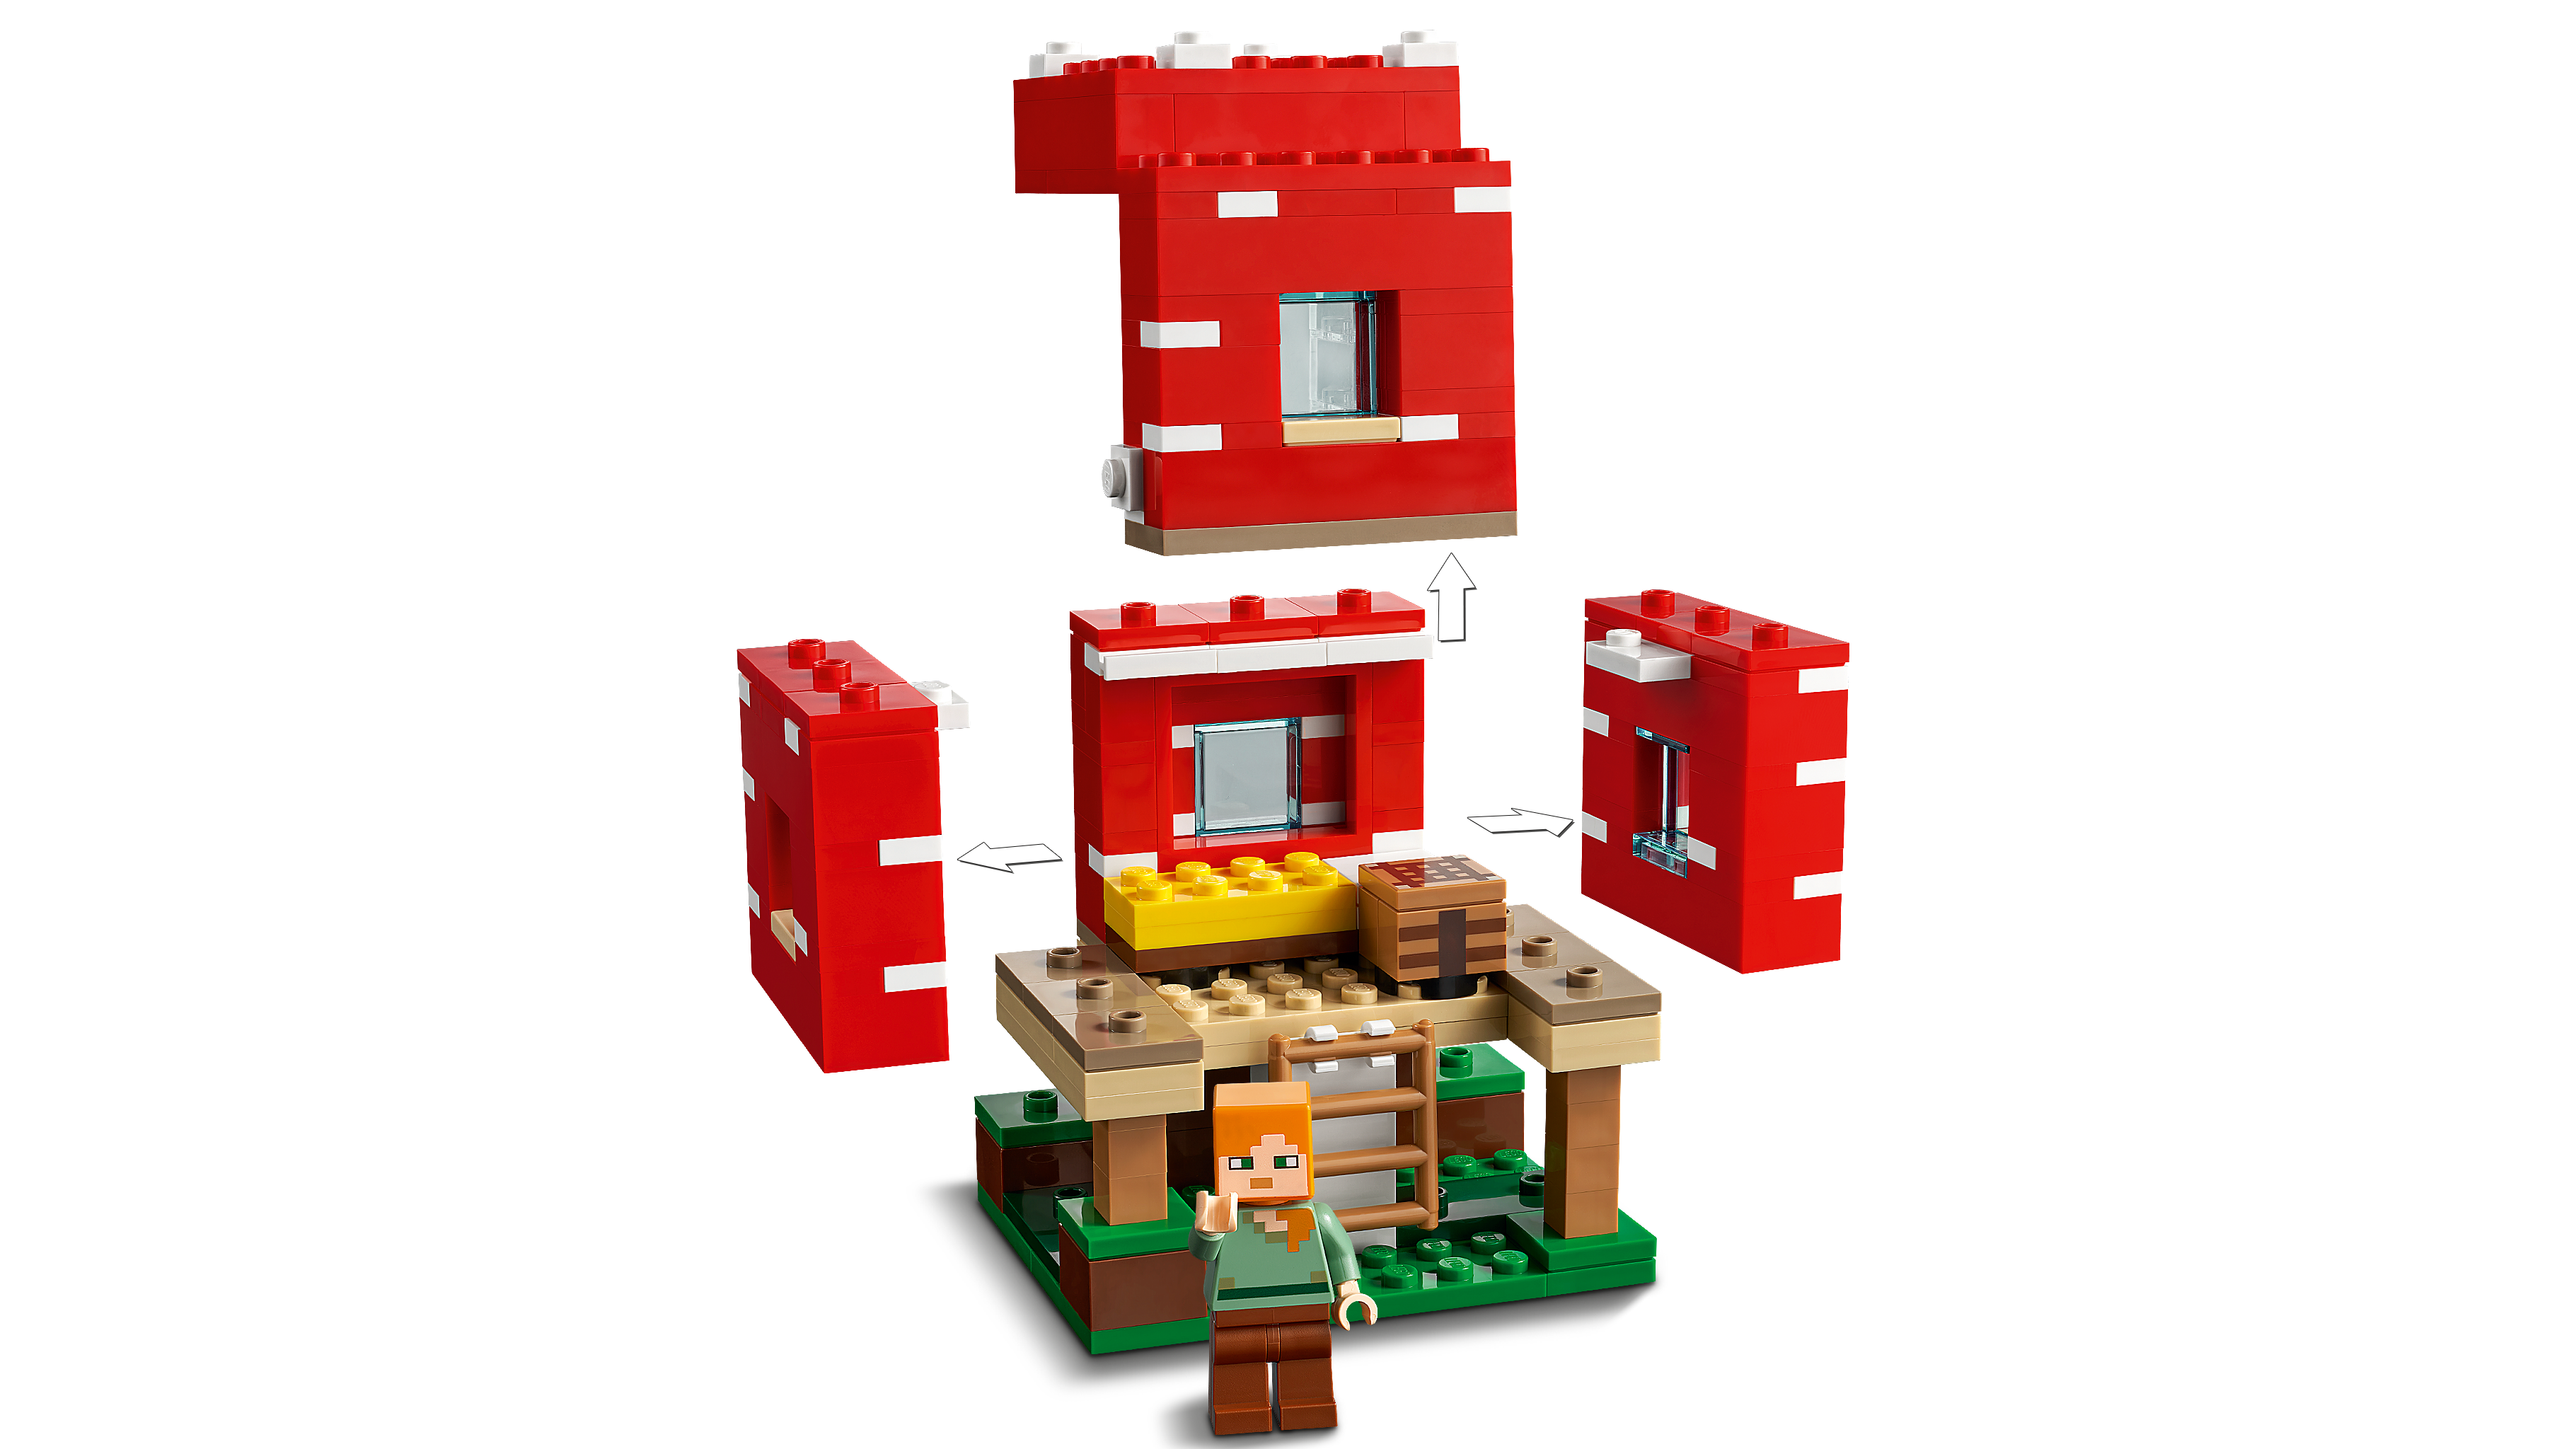 キノコハウス 21179 - レゴ®マインクラフト セット - LEGO.comキッズ